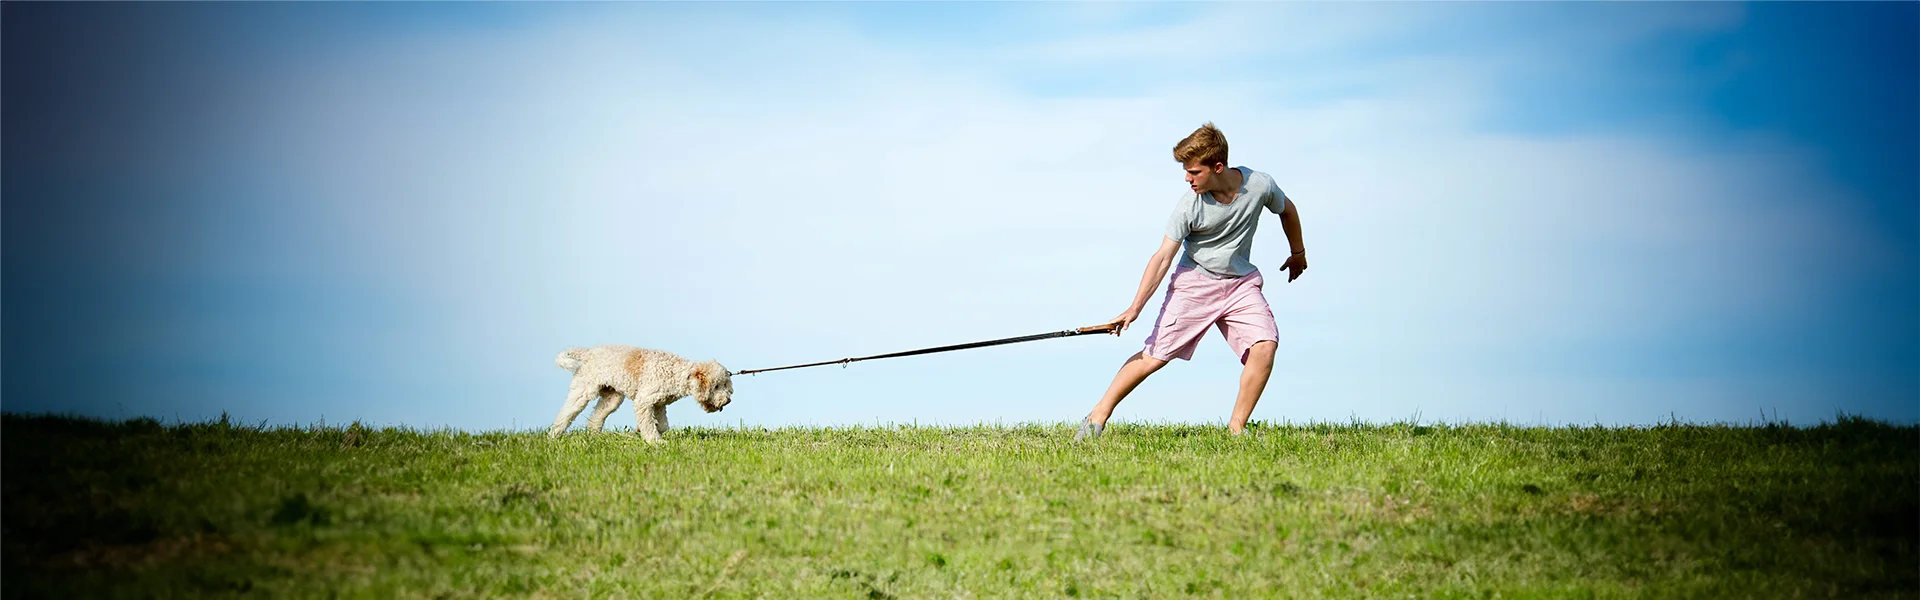 Ein junger Mann in Sommerkleidung zieht an einer Leine, um einen widerstrebenden Hund, der auf einer grünen Wiese steht, zu führen. Im Hintergrund ist ein klarer blauer Himmel zu sehen. Sie sollten die Leinenführigkeit trainieren. Um den Spaziergang für Hund und Mensch entspannter zu machen hilft ein Kurs in der Hundeschule Dummyschule in Kaiserslautern.